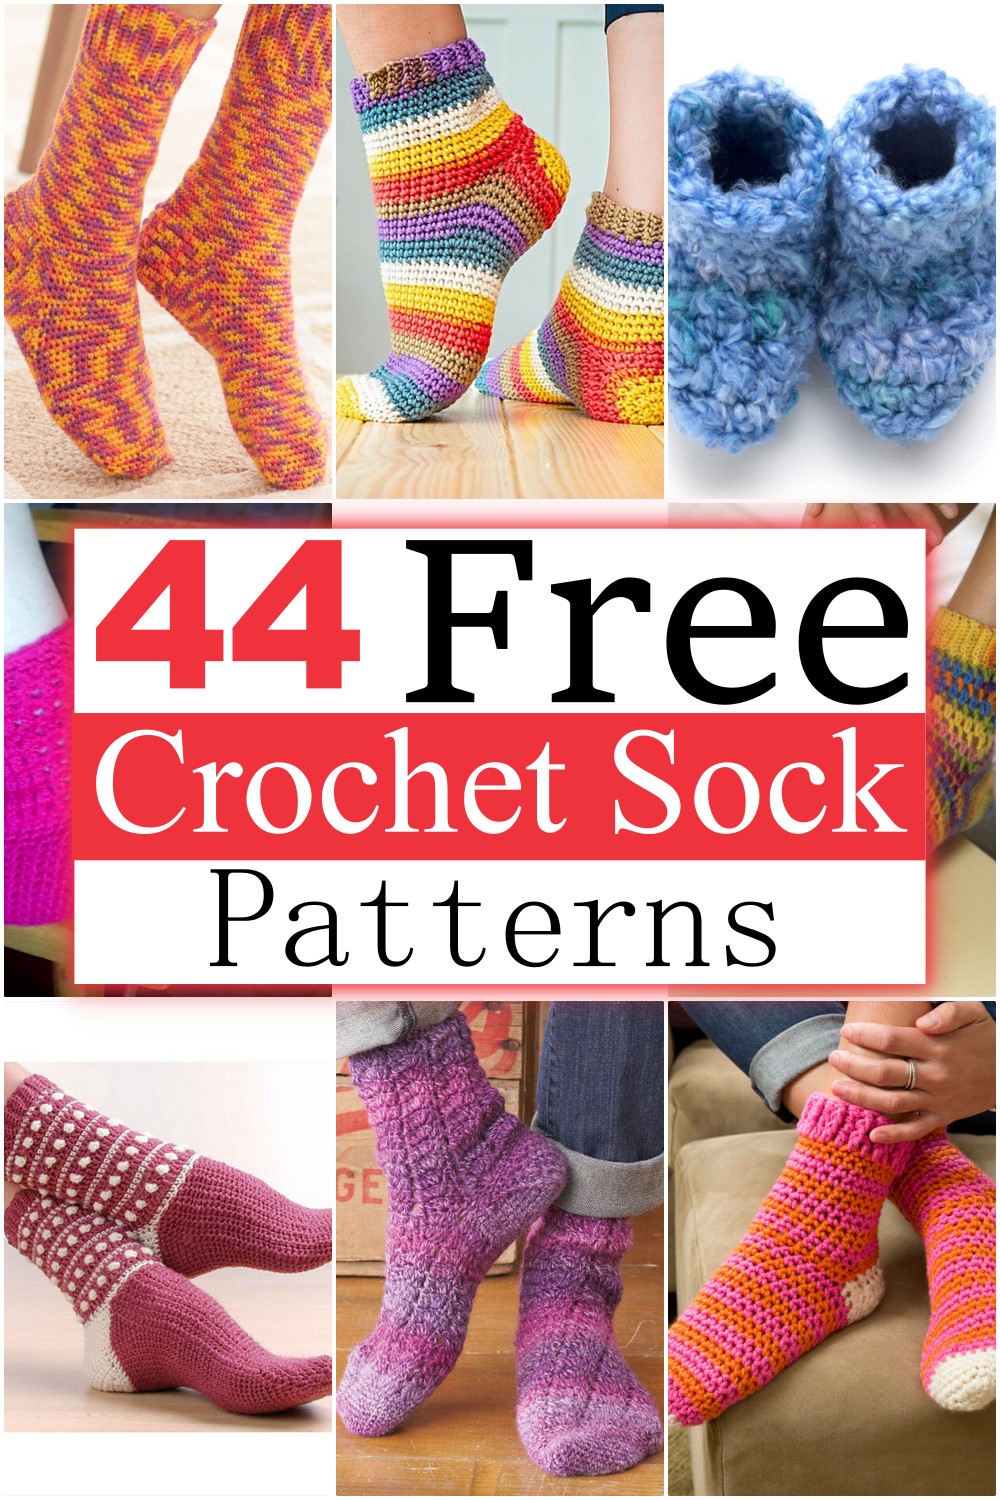 44 Free Crochet Sock Patterns